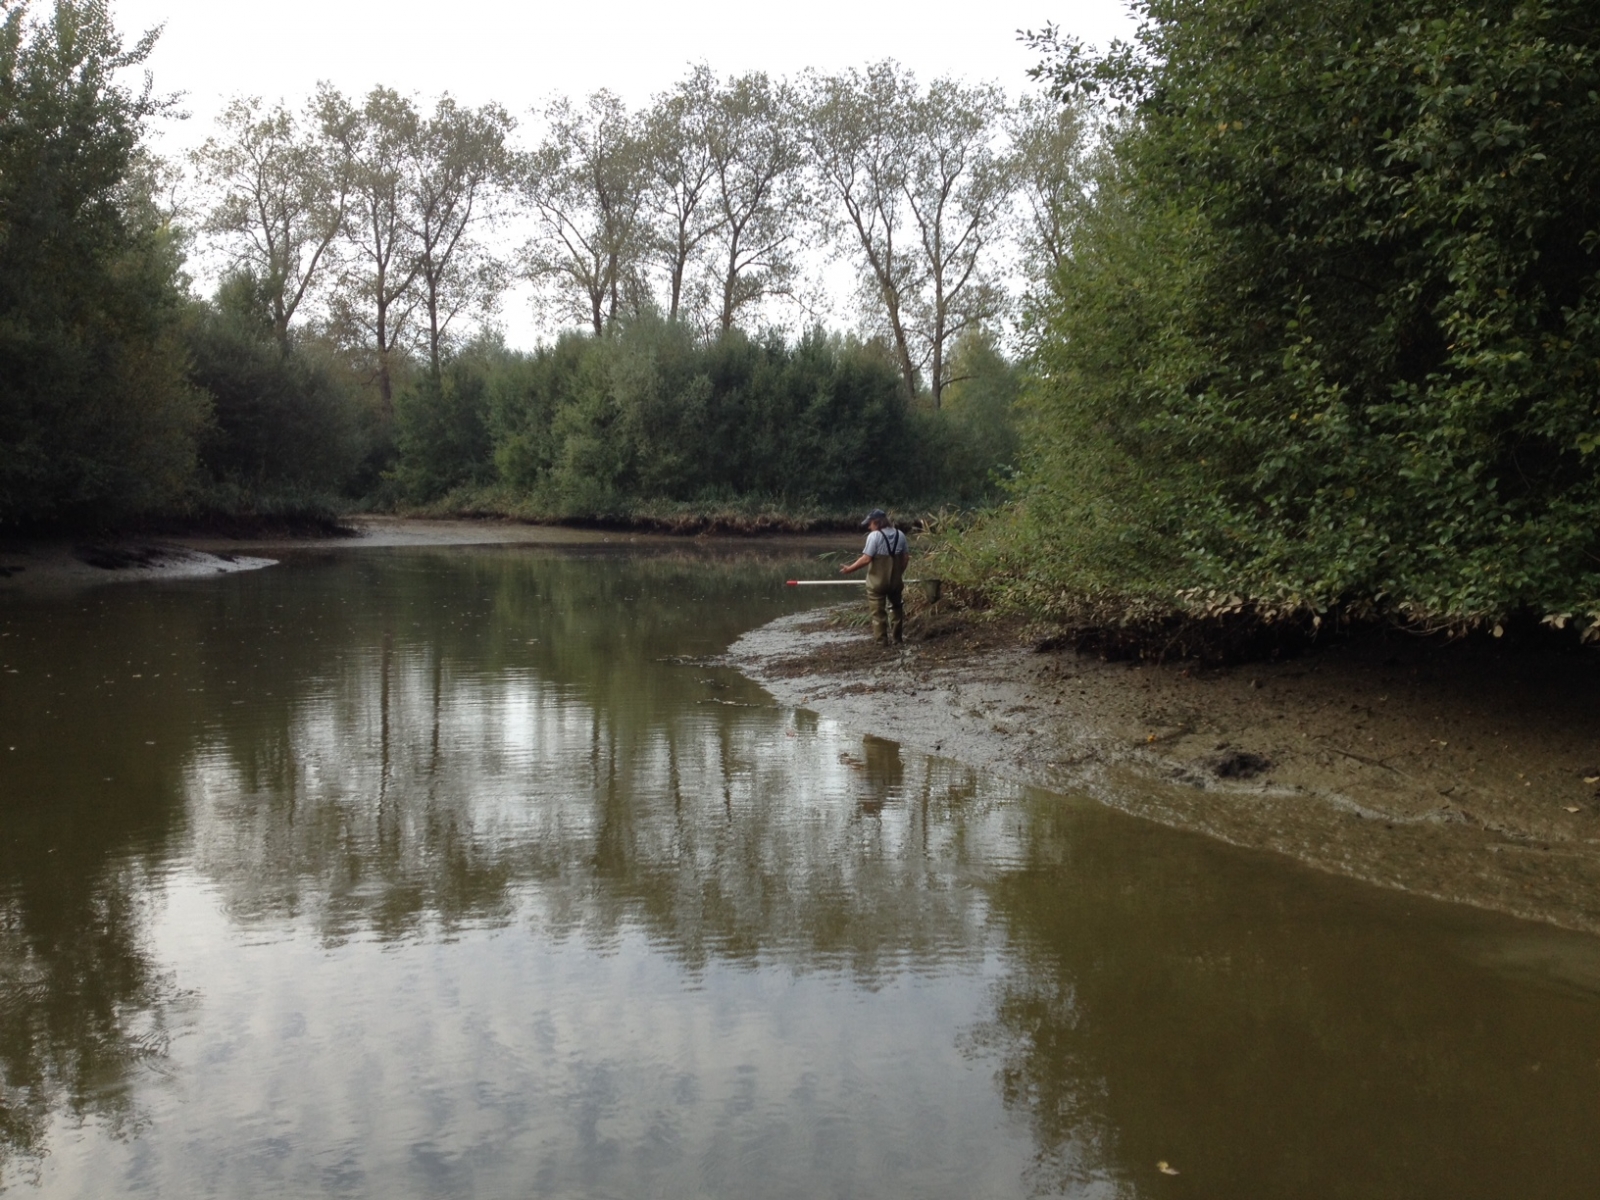 L'étang de Corbat, situé près de Porrentruy, sera revitalisé afin de préserver l'écosystème du site.